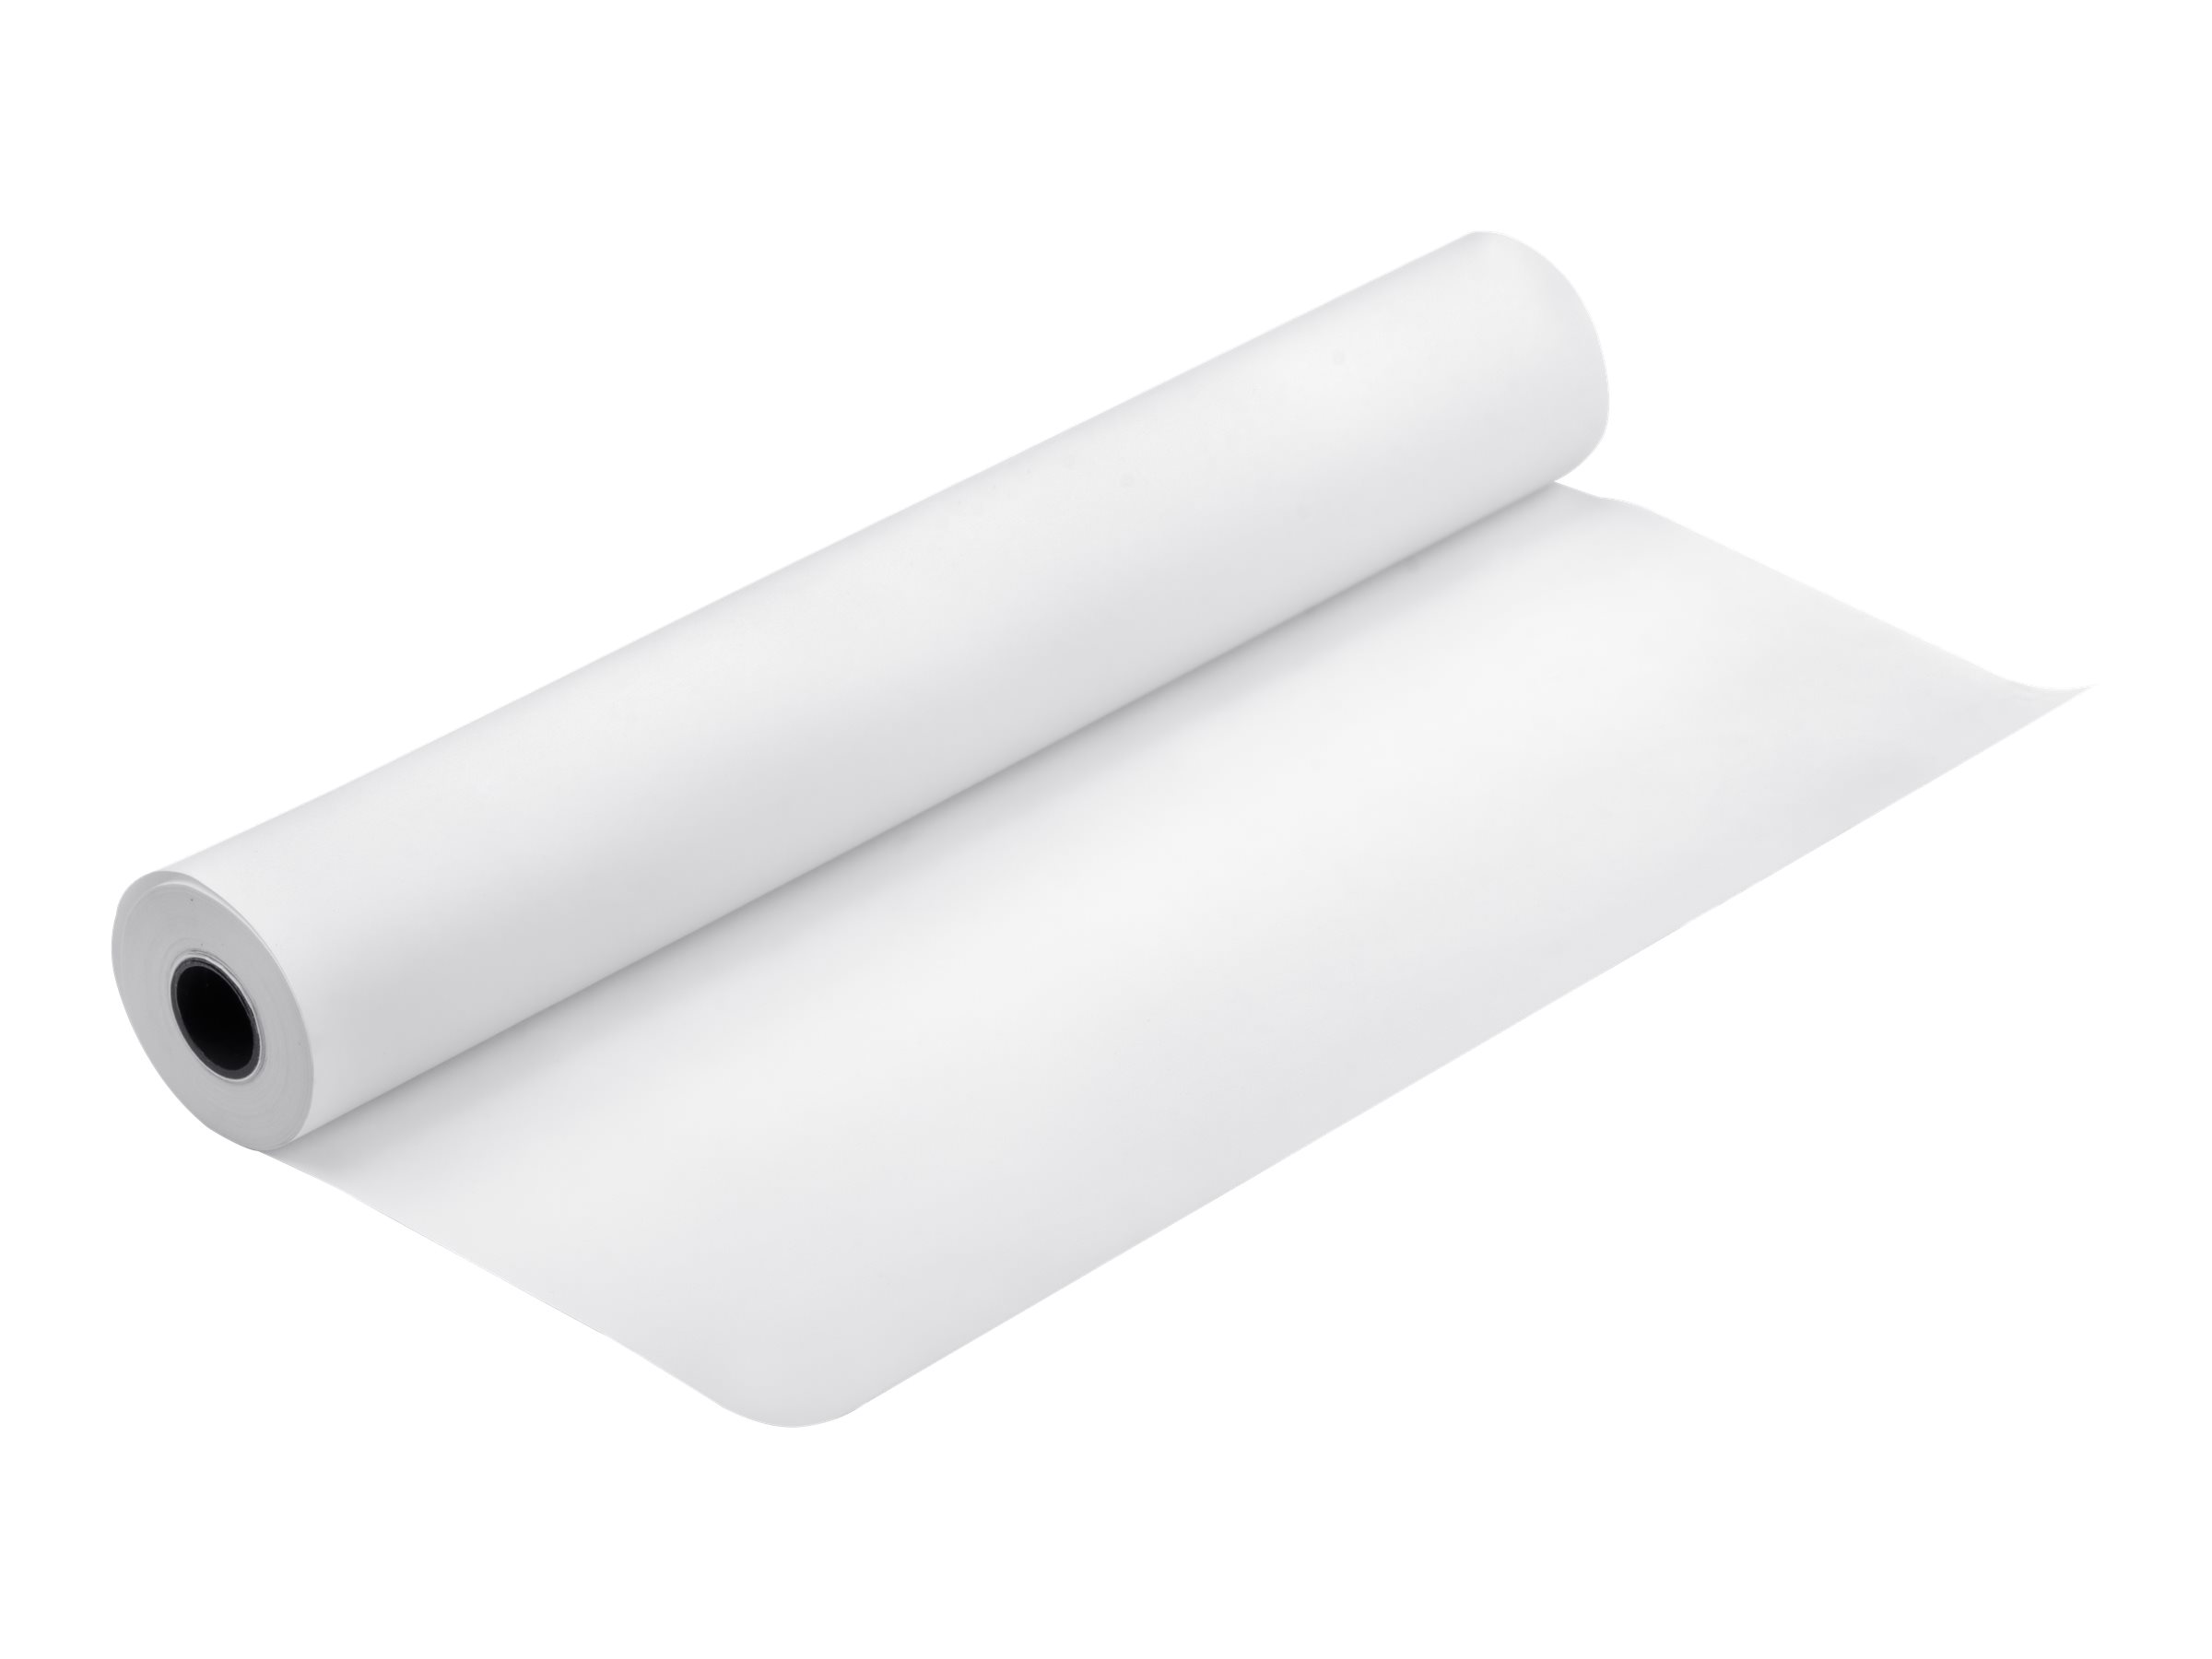 Epson Singleweight Matte - Mat - Rouleau A1 (61 cm x 40 m) - 120 g/m² - 1 rouleau(x) papier - pour SureColor SC-P7500, P9500, T2100, T3100, T3400, T3405, T5100, T5400, T5405, T3160, T5160 - C13S041853 - Rouleaux de papier